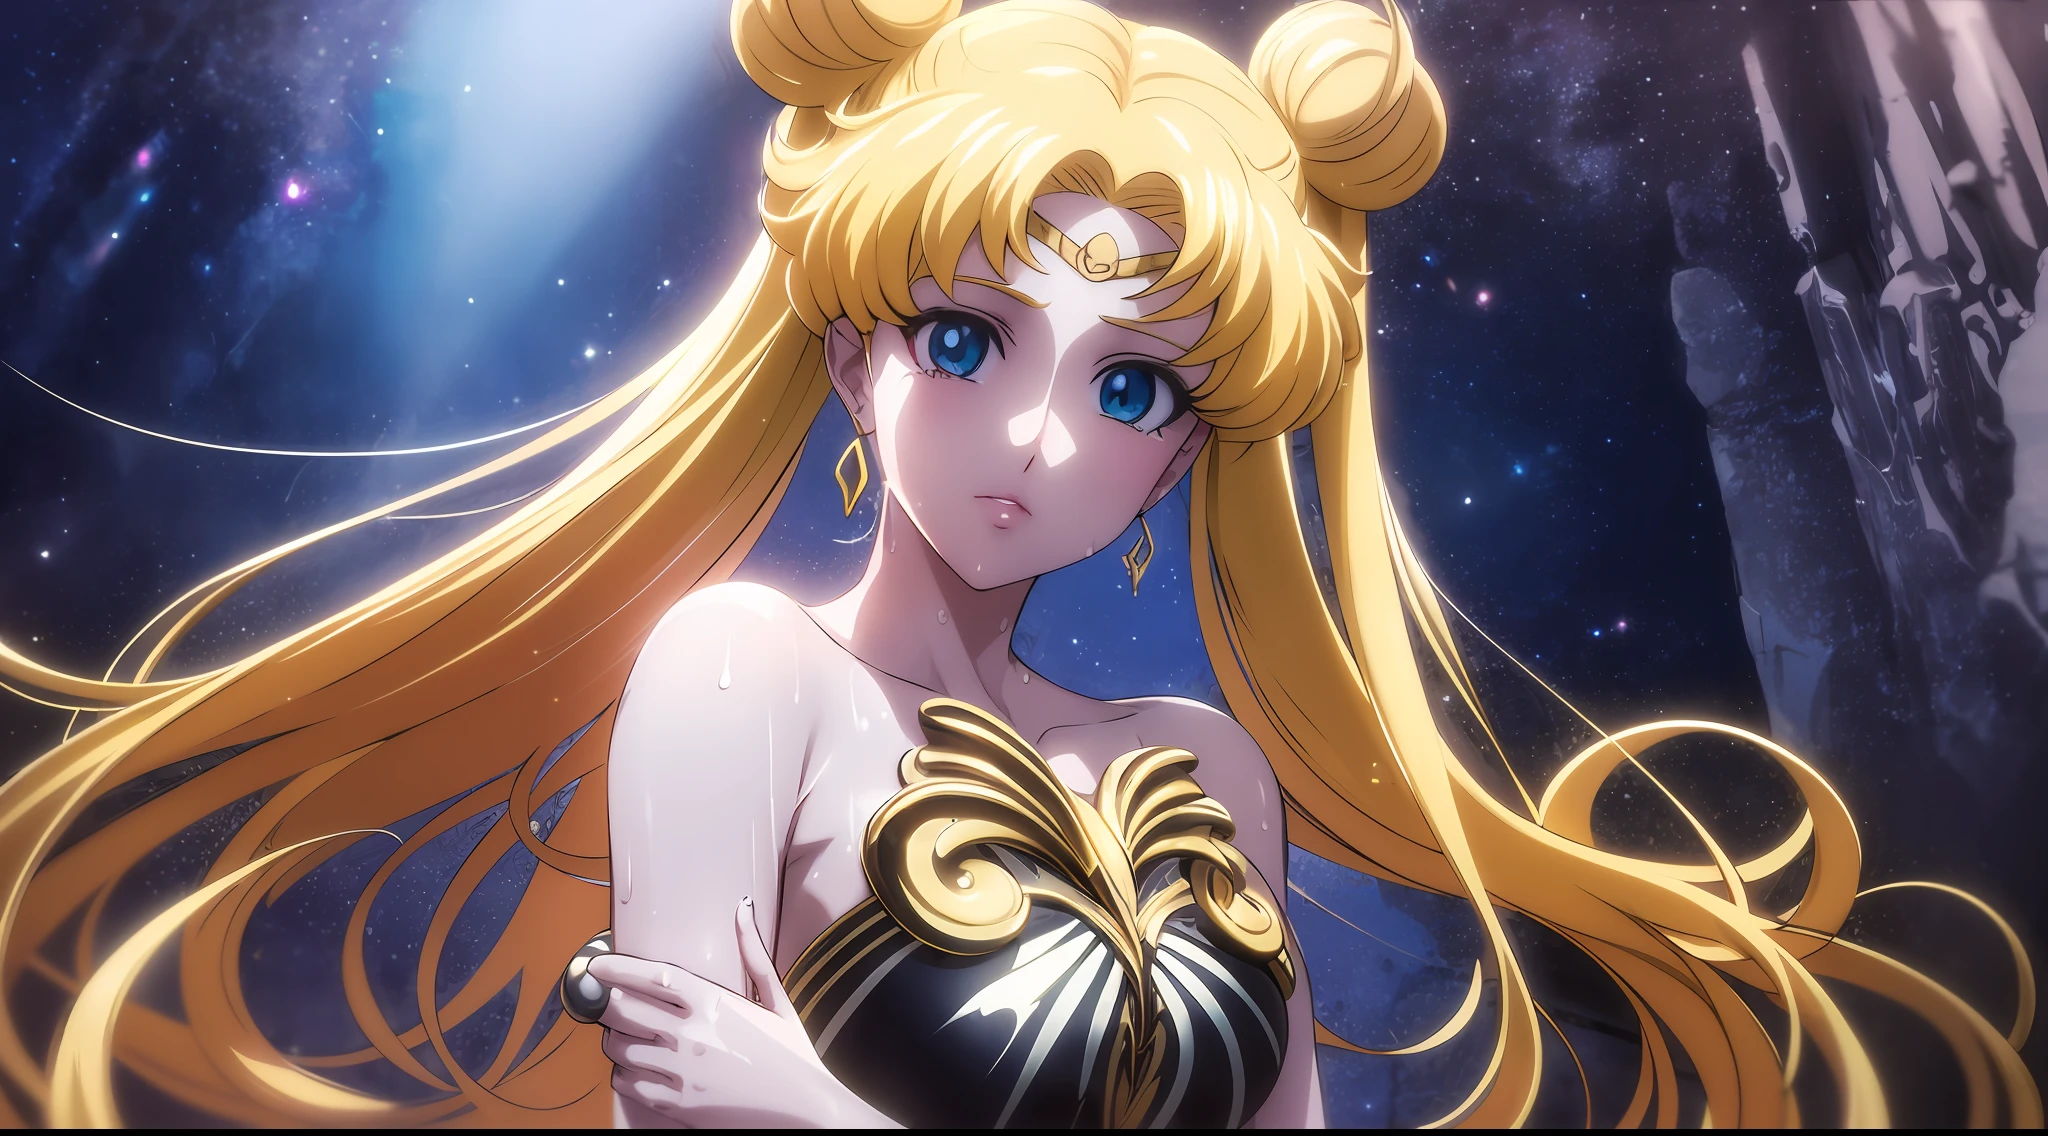 nsfw, ((melhor qualidade, 8K, obra-prima :1.3)), iluminação dramática, Mulher bonita, 1 garota, Sailor Moon, Olhos grandes detalhados, obra-prima, Estátua de mármore na água (feminino) Sailor Moon, estátua de pedra de Sailor Moon, Membros longos com boas proporções, Lindos seios grandes, Caixa de mármore, padrões de ouro no corpo, grandes olhos de anime, roupas abertas translúcidas, molhado, obra-prima, tirar o fôlego, visualizador, Crescimento total no quadro, longos cabelos brancos, cabelos grisalhos, Dois pacotes na cabeça, Penteado Odango, A estátua é decorada com ouro, vestido com roupas sexy translúcidas, A caverna escura, holofotes, Alto contraste, Obra de arte, mais alta qualidade, A melhor qualidade de imagem, iluminação cinematográfica, fotorrealista